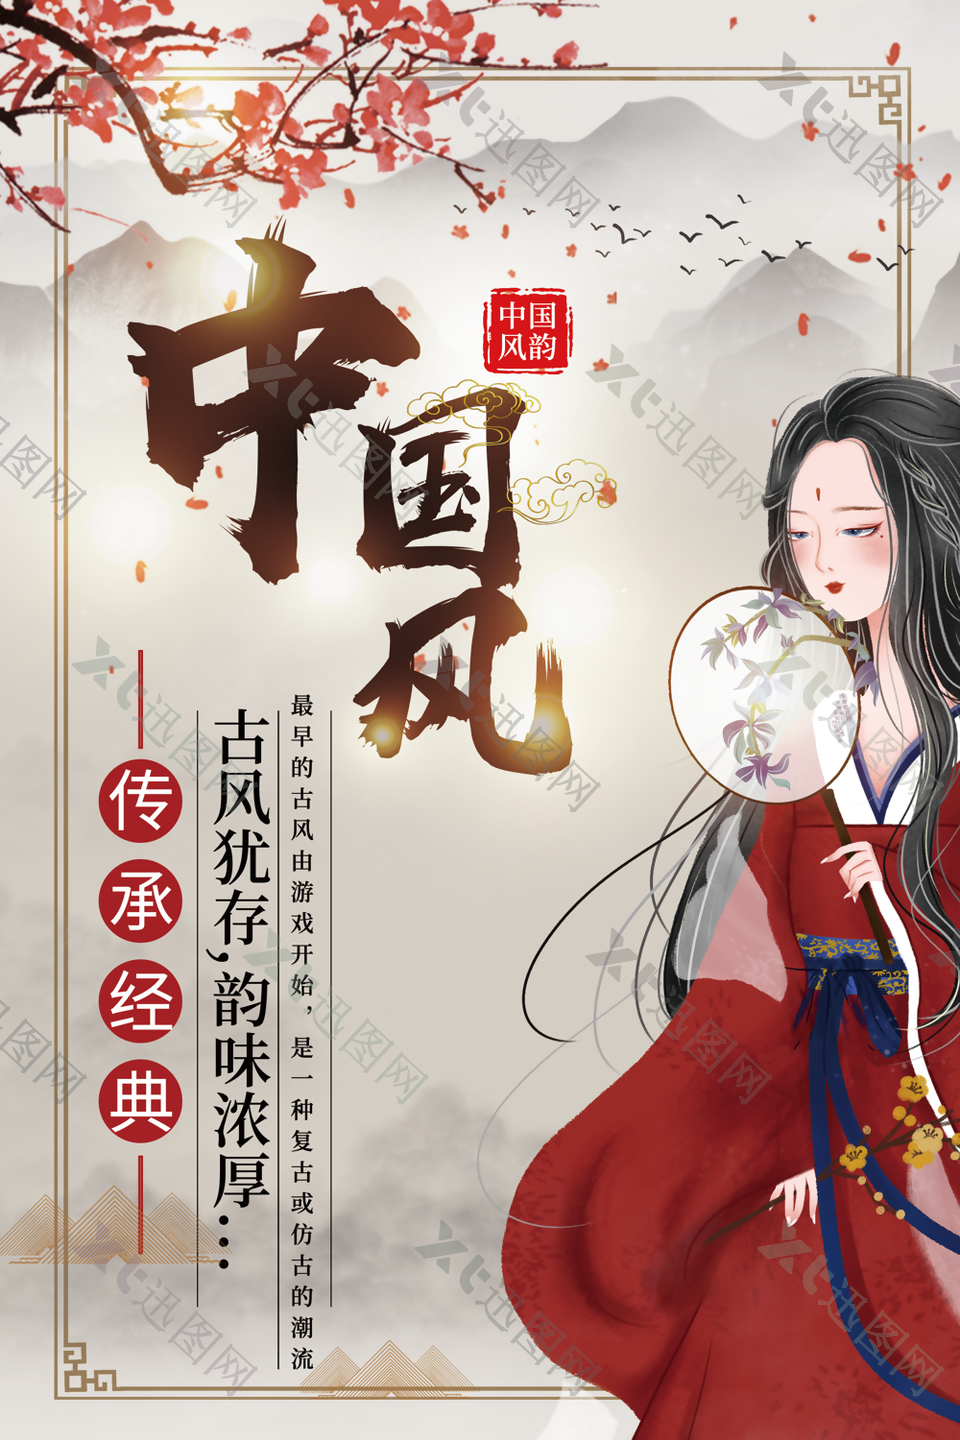 手绘精美中国风传统汉服文化海报图设计